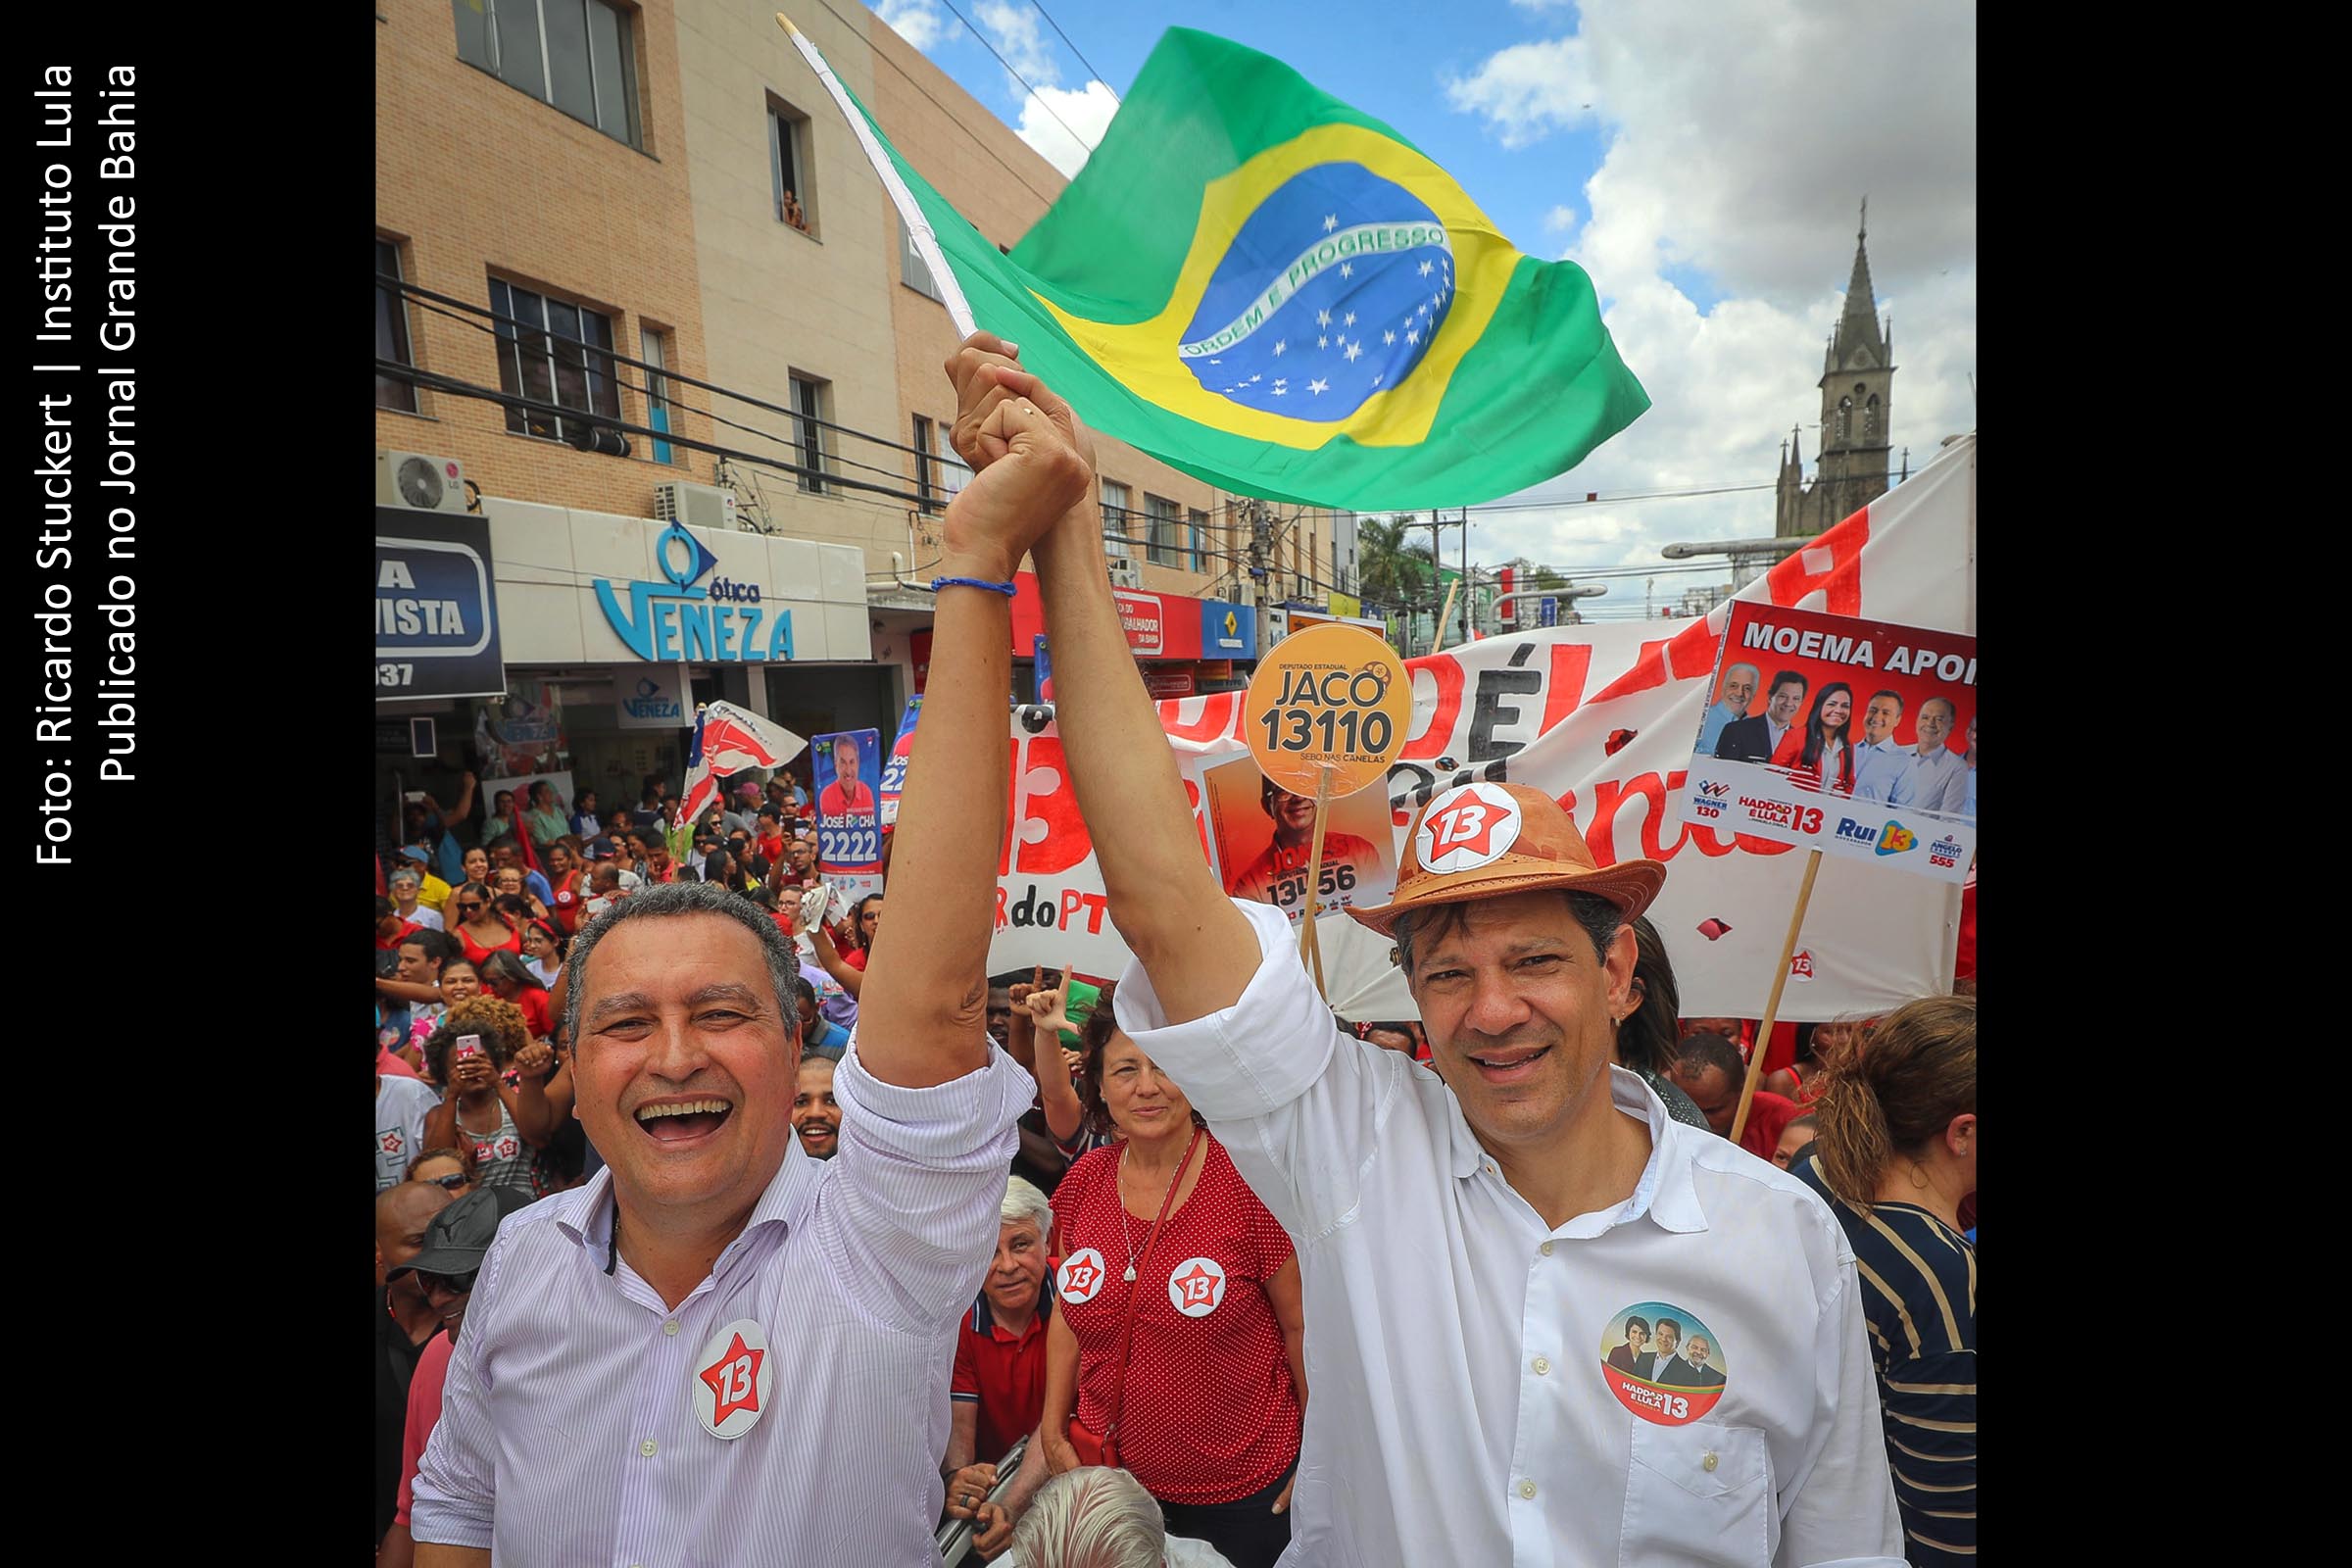 Rui Costa e Fernando Haddad promovem ato de campanha eleitoral em Feira de Santana.